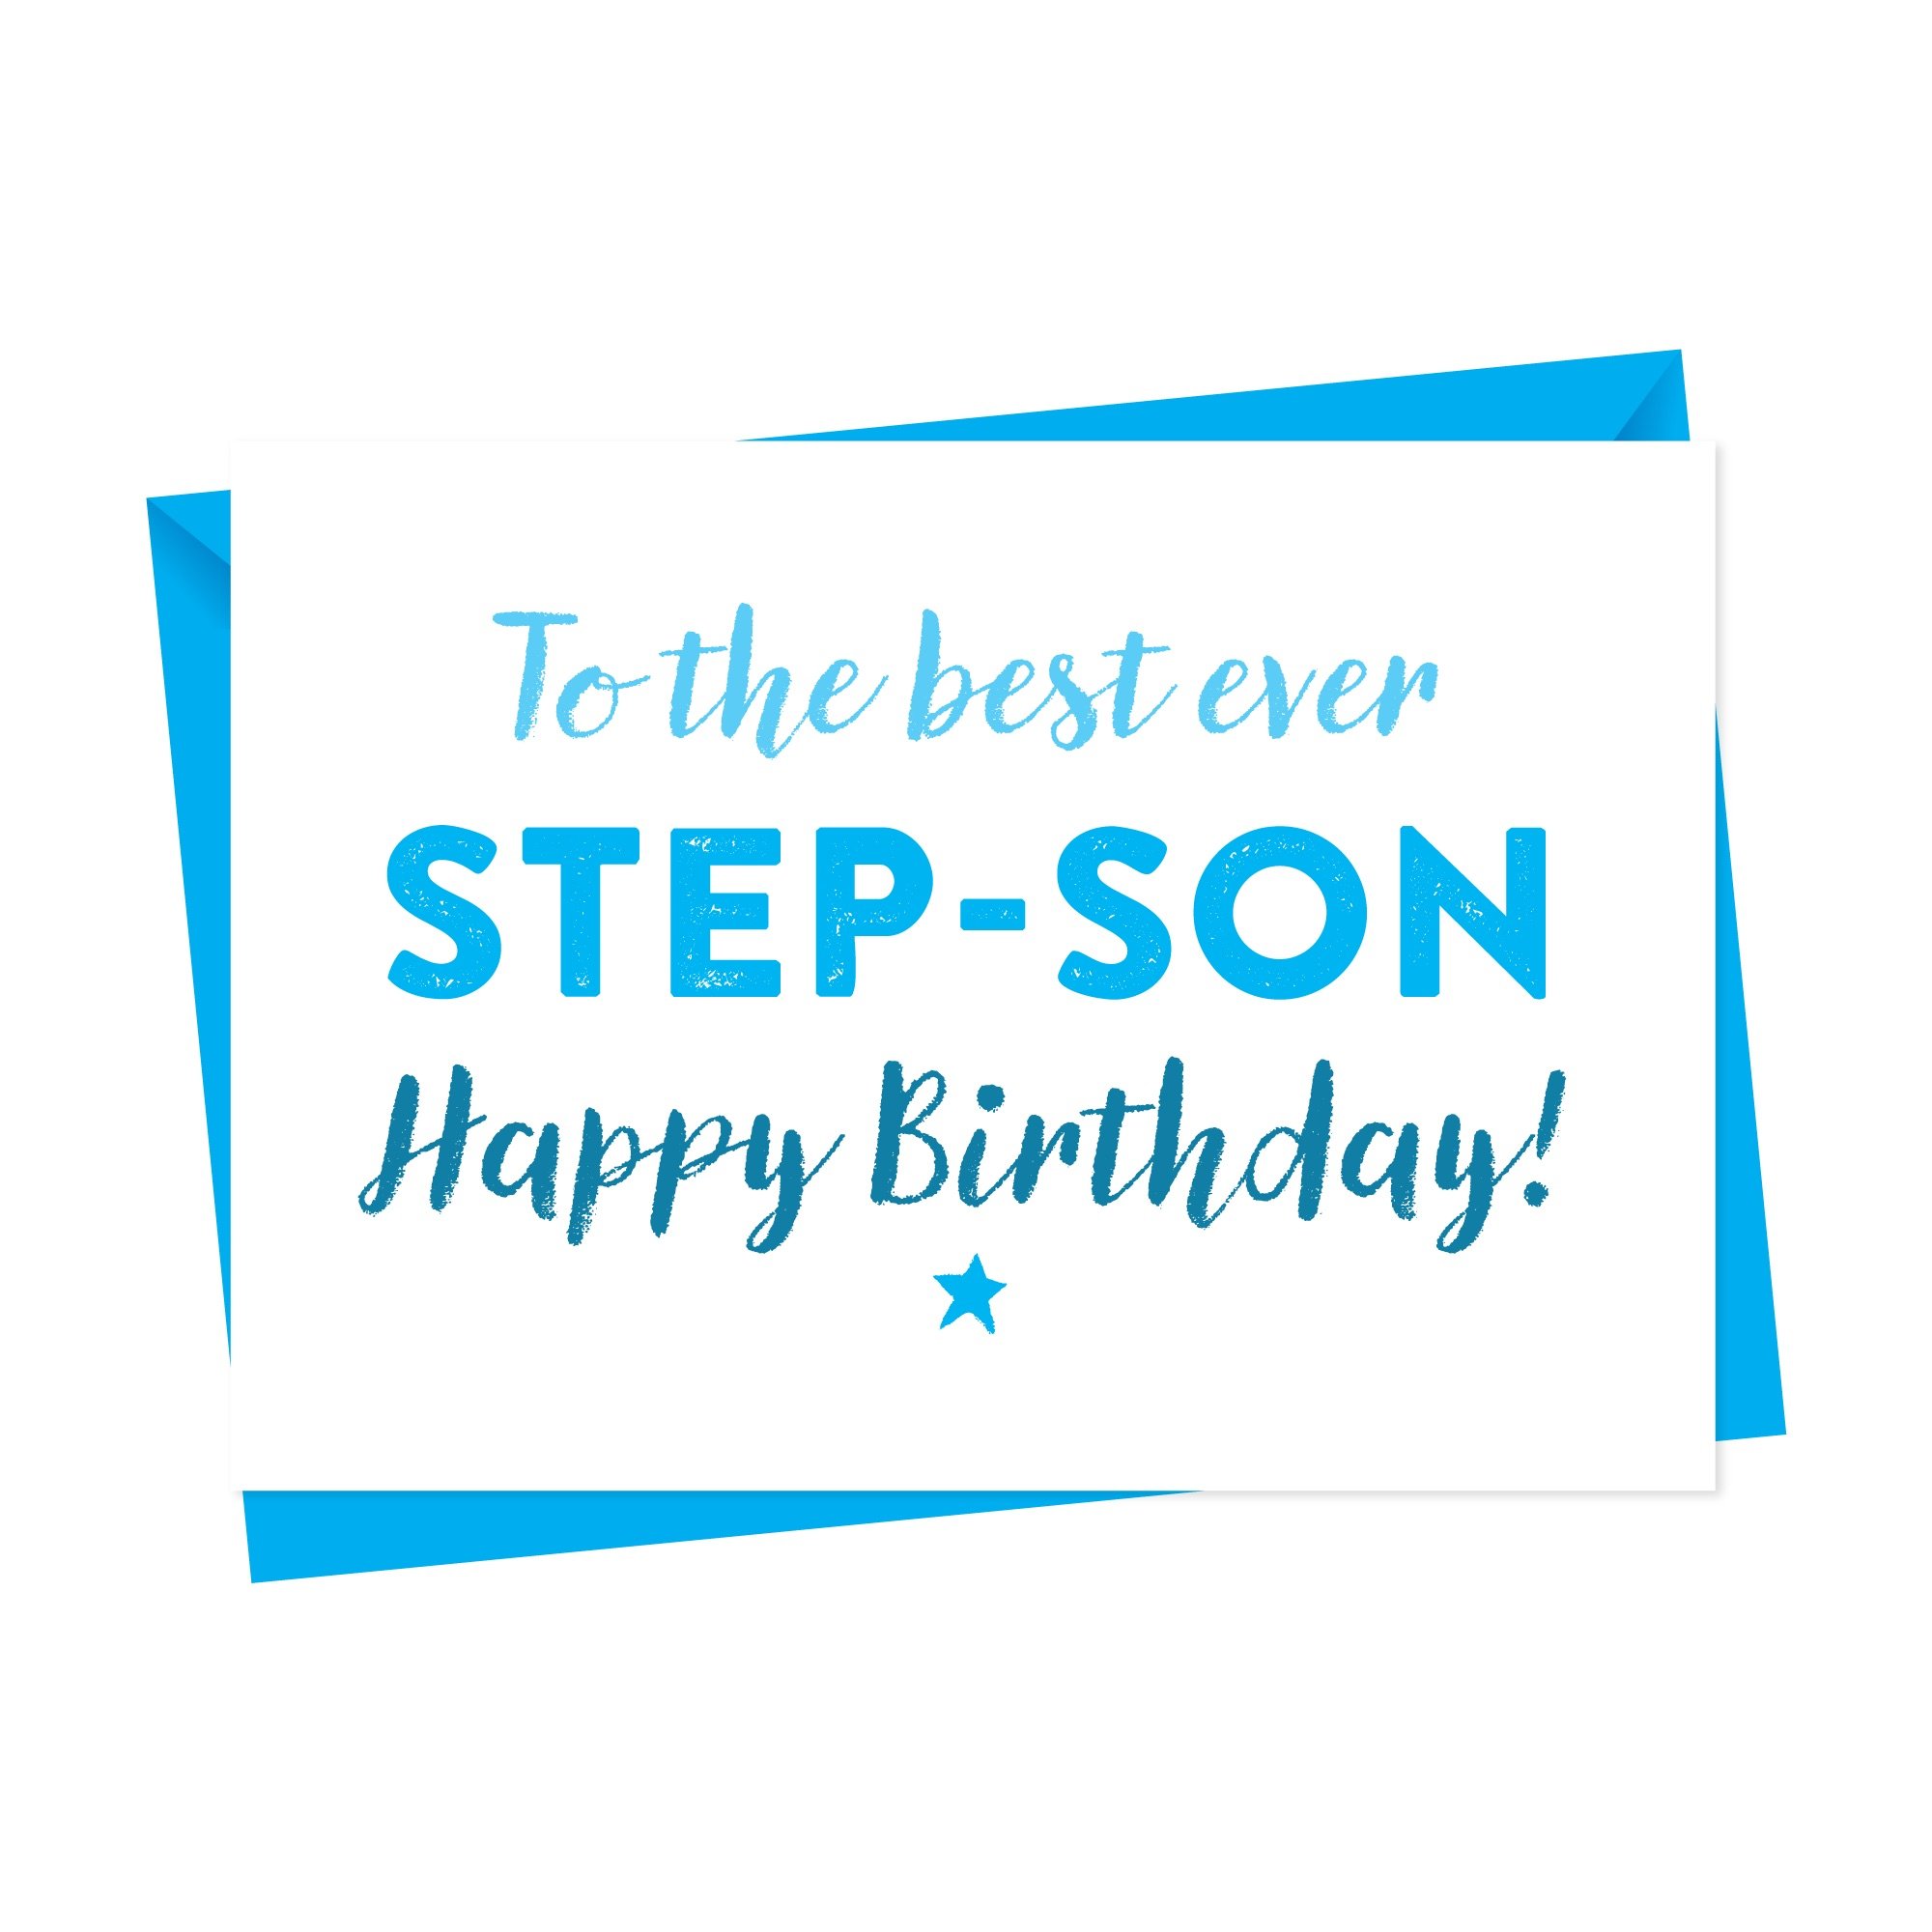 Canvas Birthday Card For Step Son